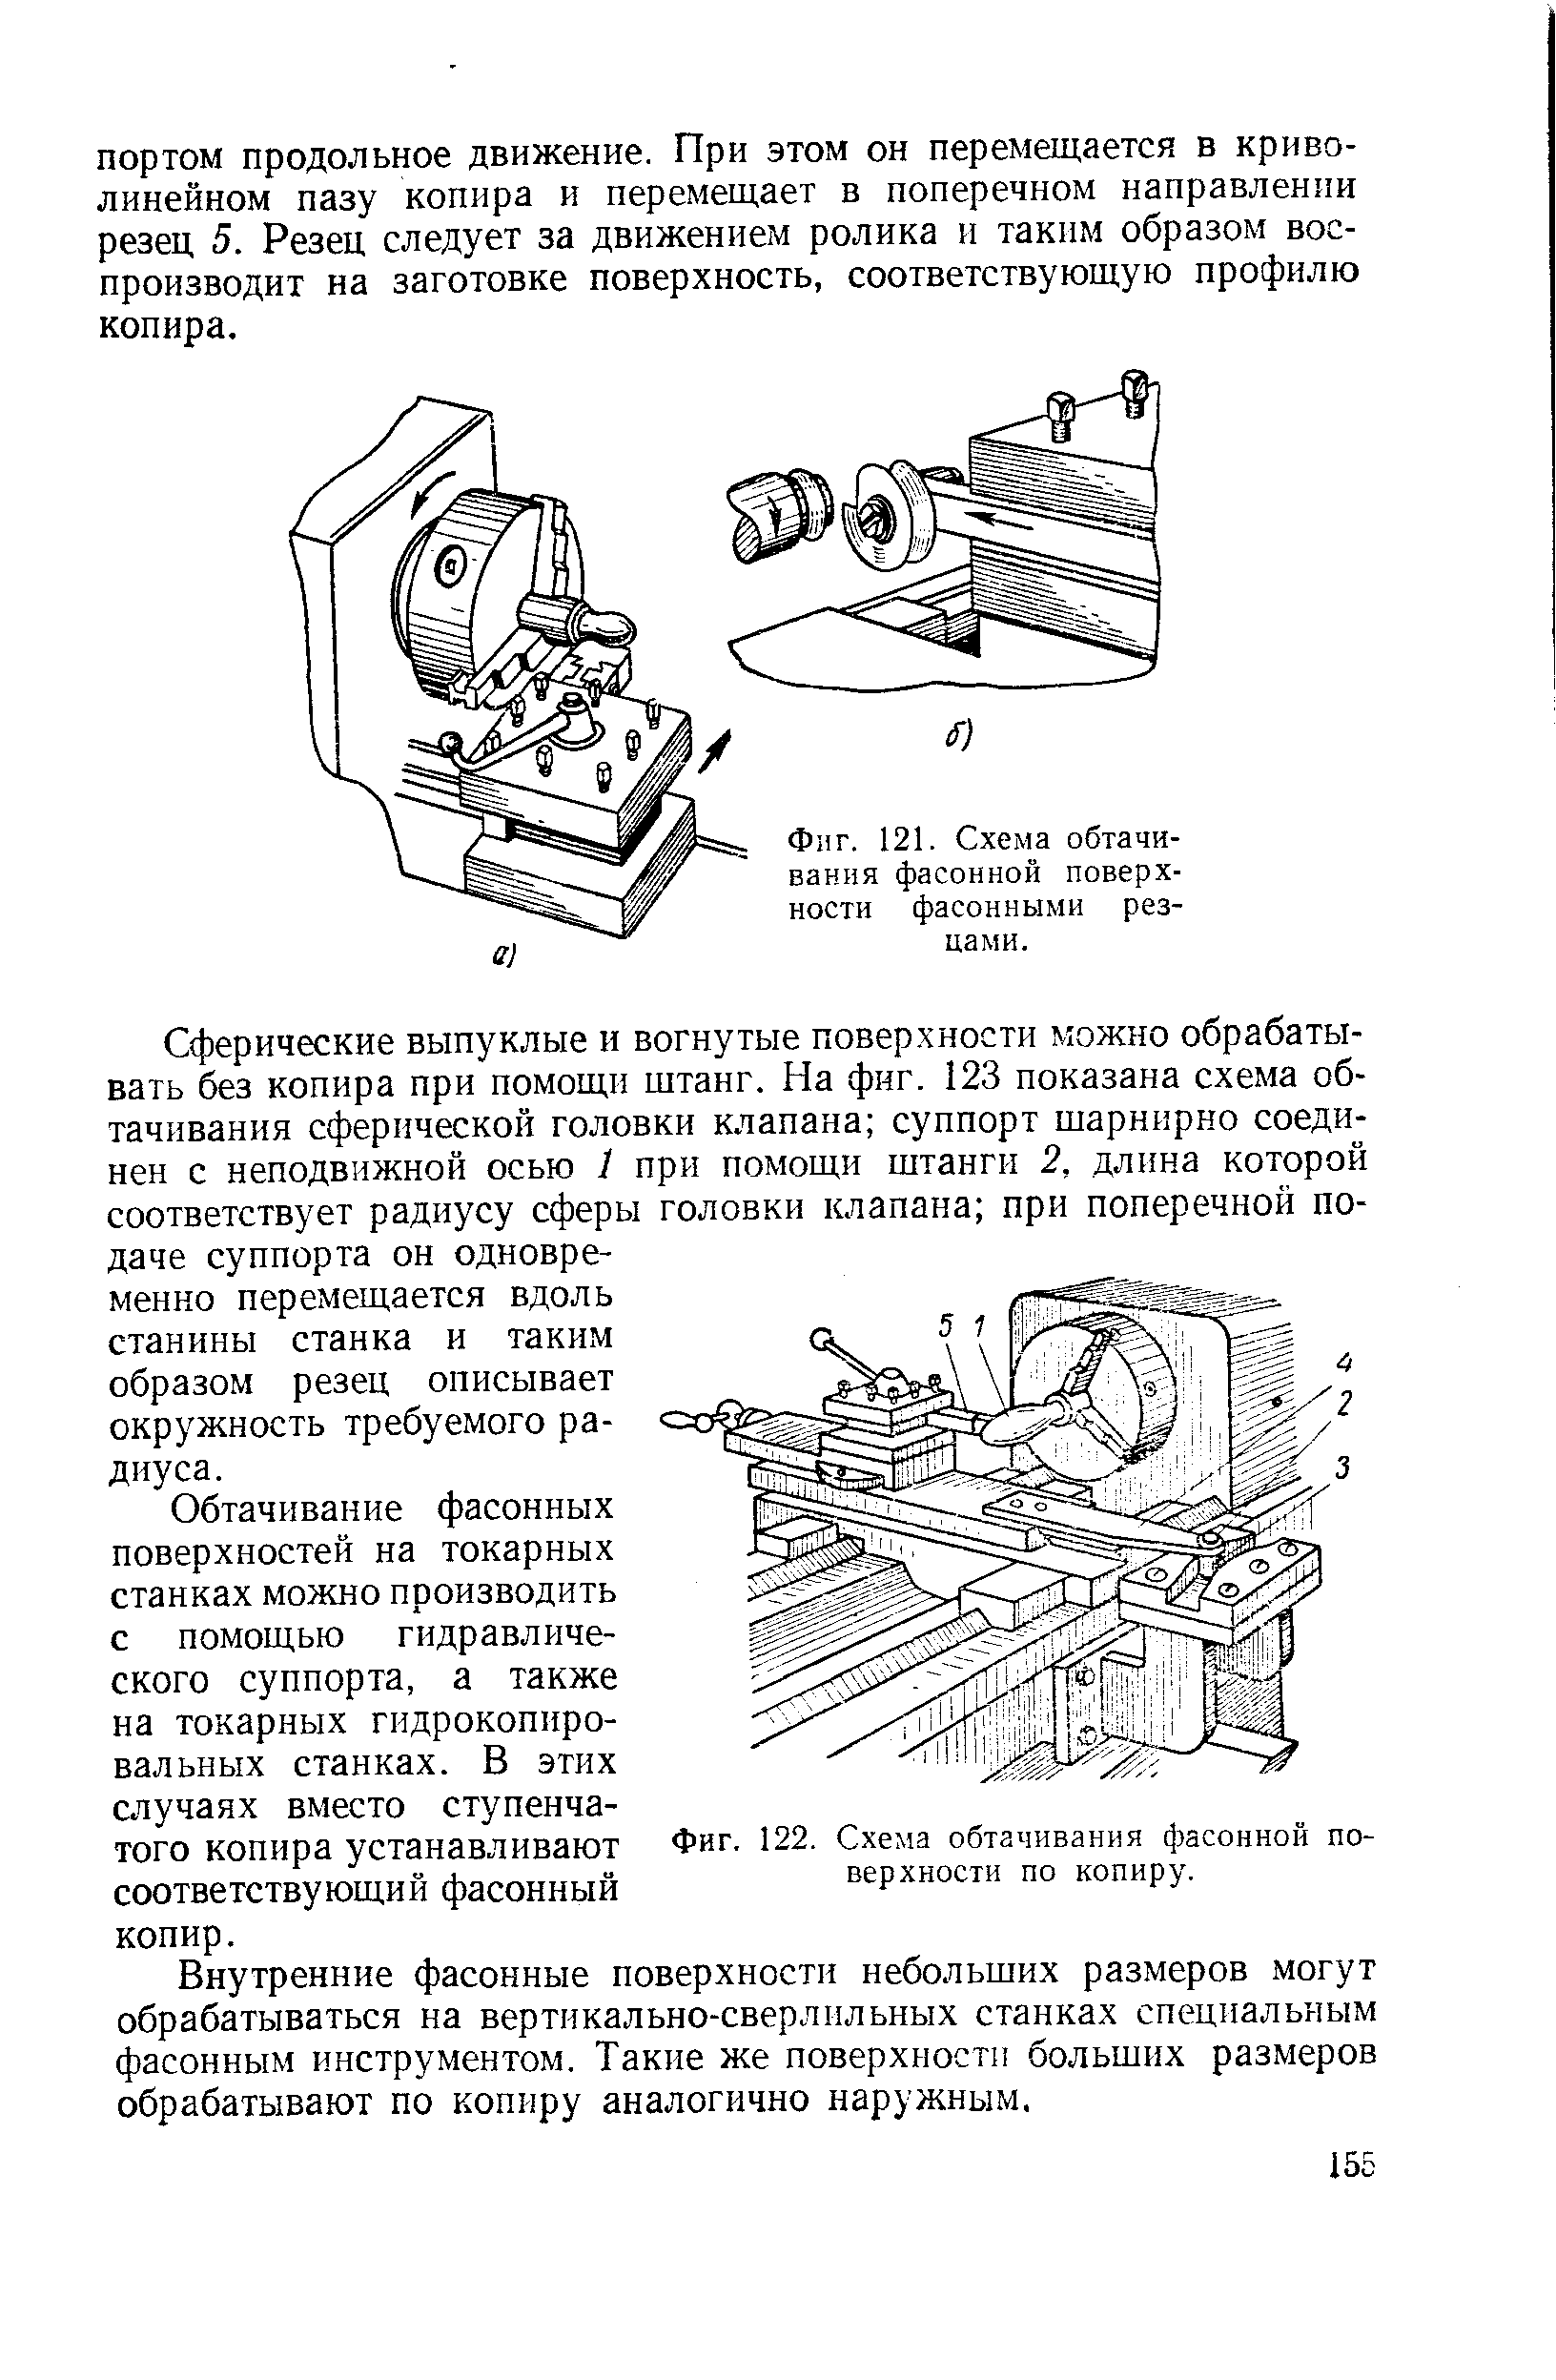 Фиг. 121. Схема обтачивания фасонной поверхности фасонными резцами.
